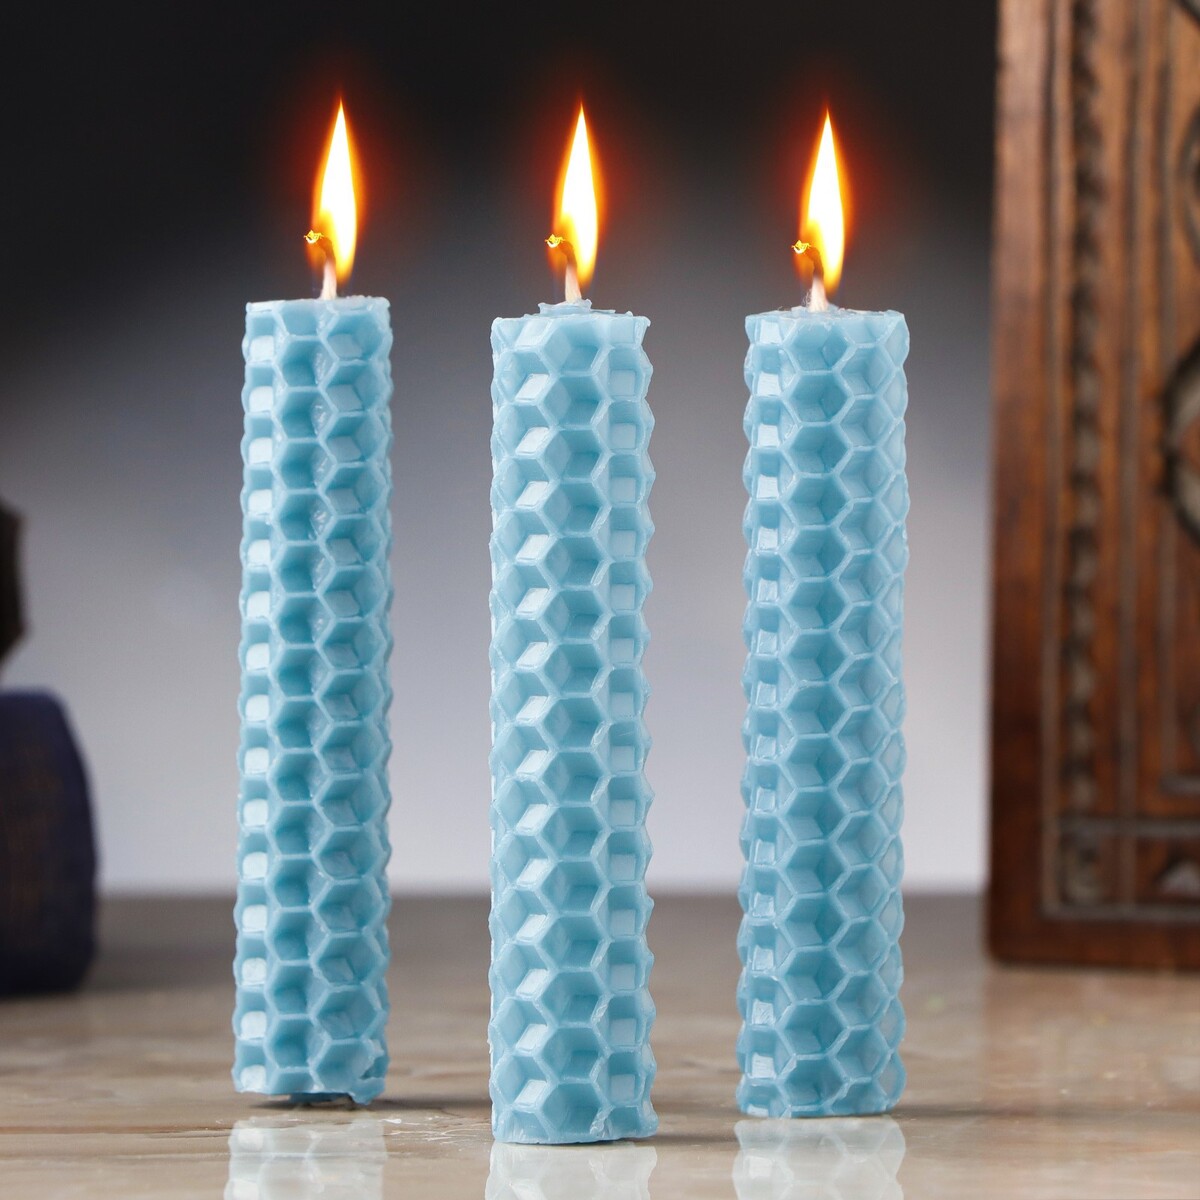 Набор свечей из вощины прими свои чувства практики которые помогут обрести спокойствие и уверенность когда мир вокруг сходит с ума